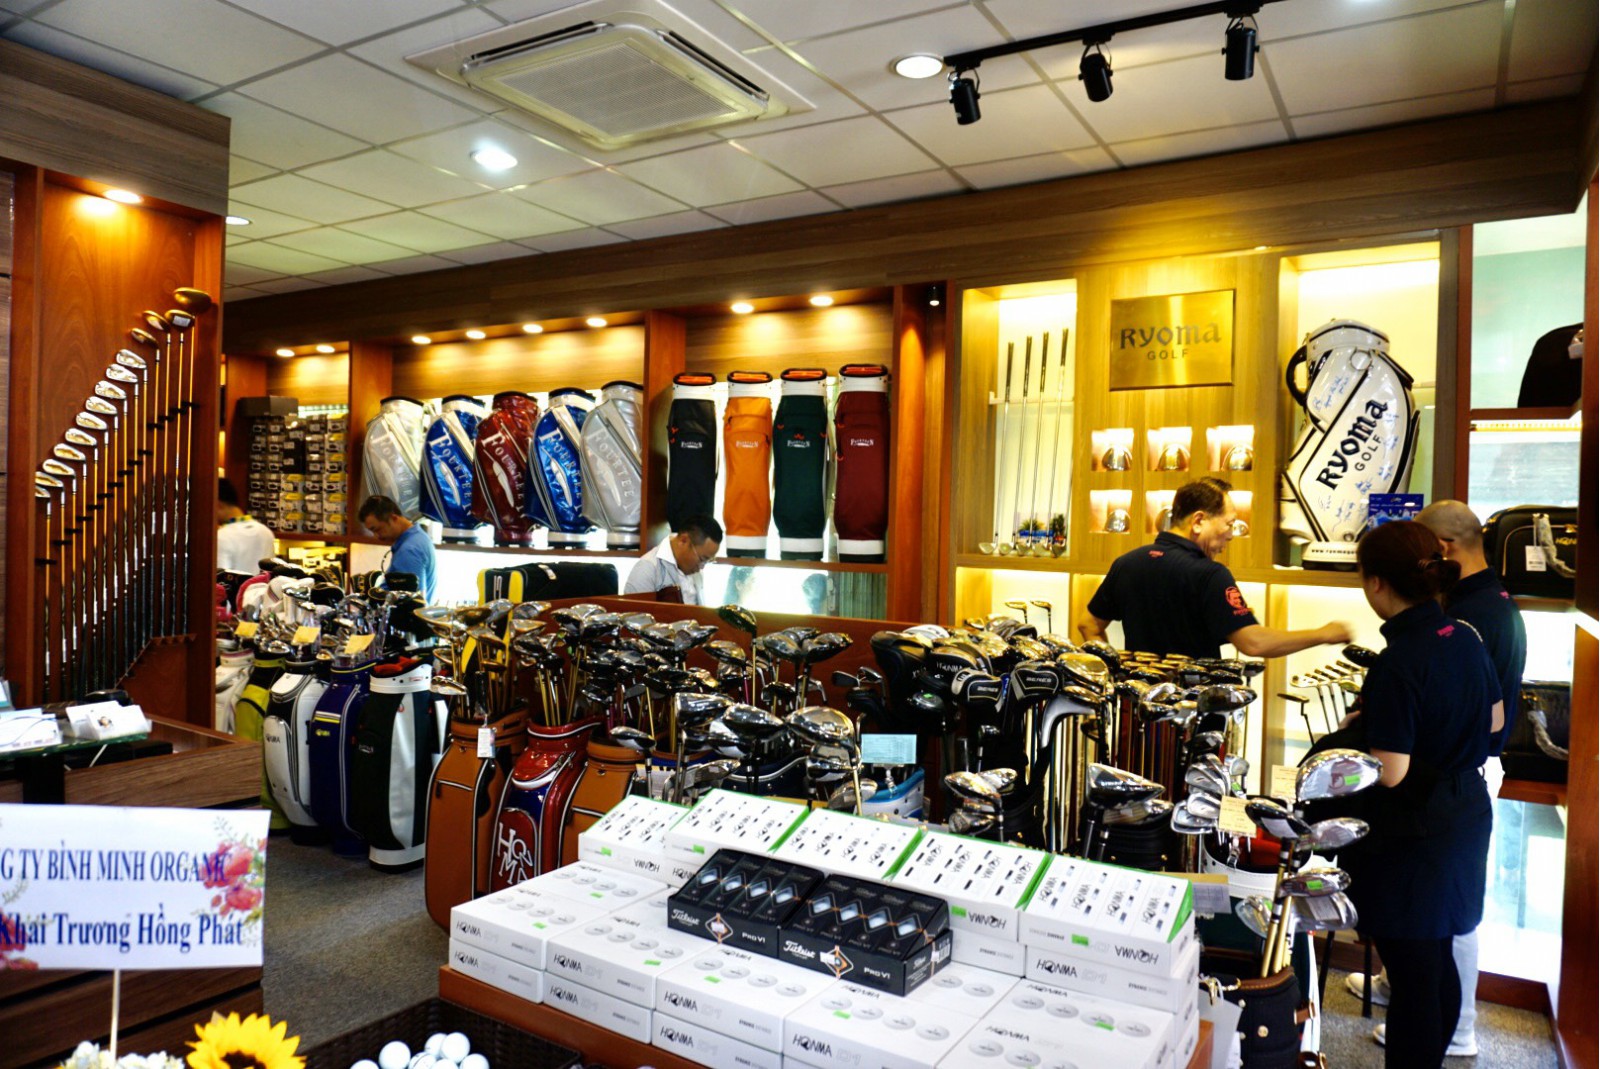 Proshop trưng bày đa dạng các dòng sản phẩm golf, đặc biệt các thương hiệu đến từ Nhật